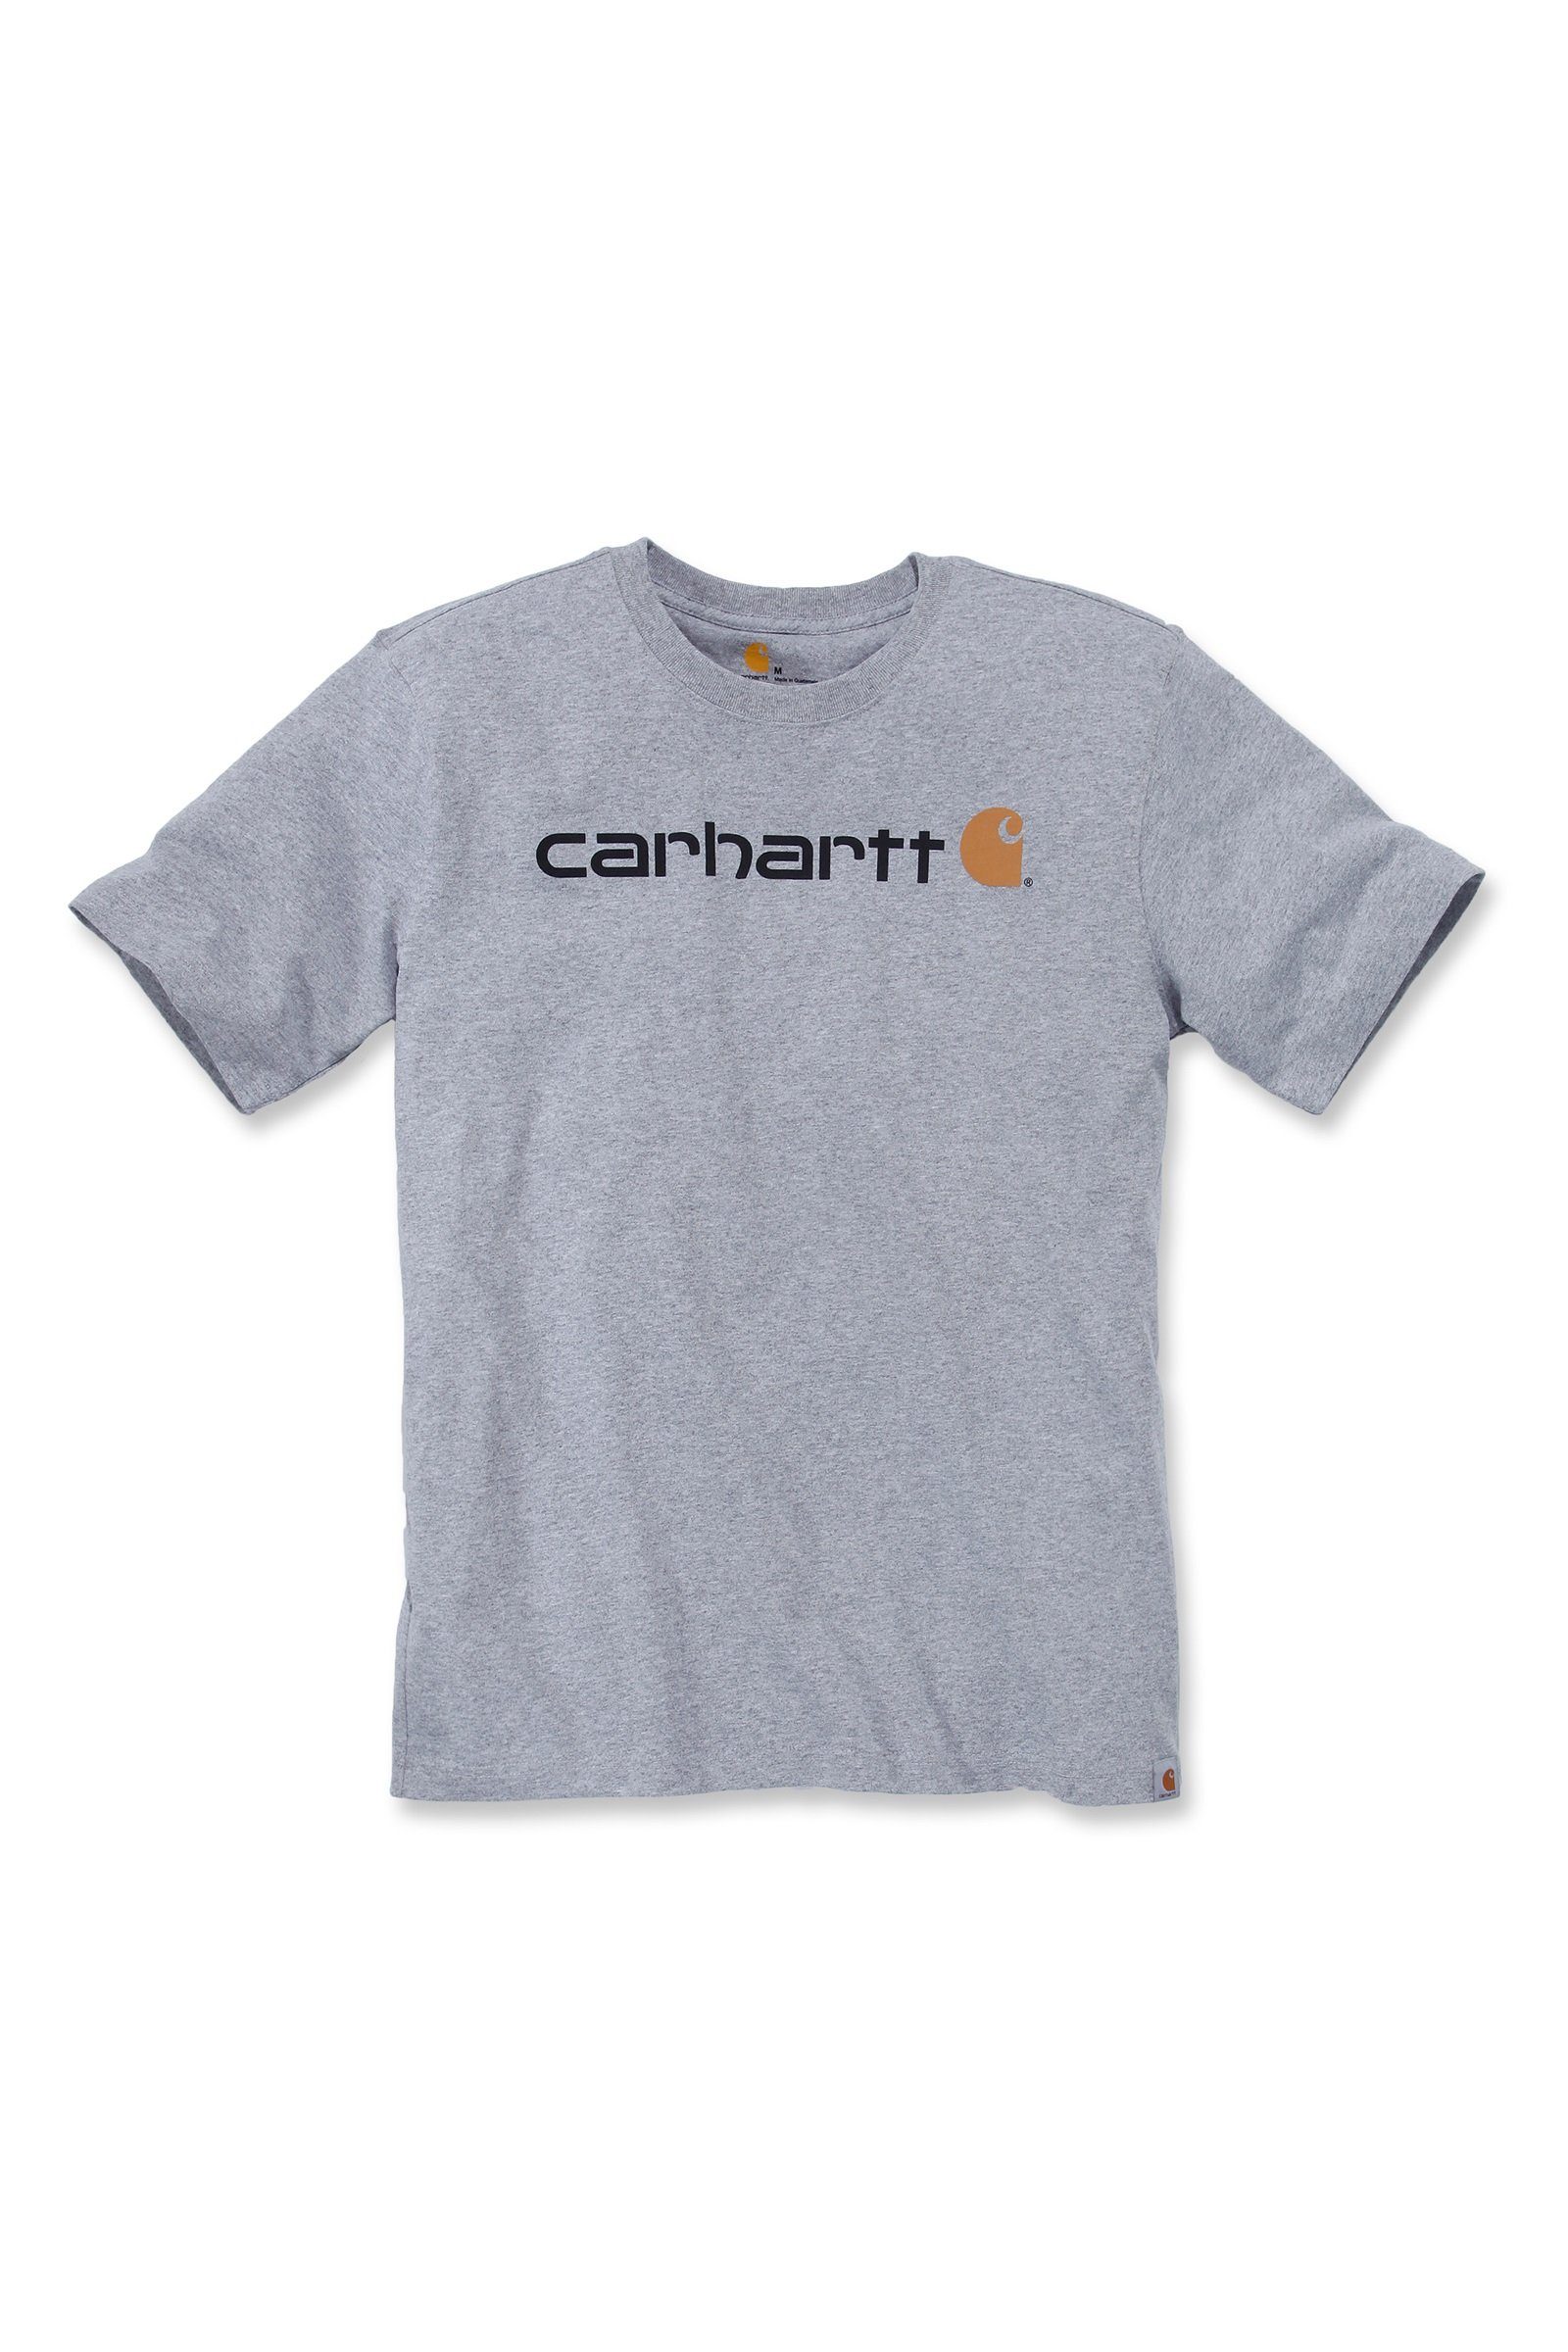 Carhartt T-Shirt Carhartt Herren T-Shirt Relaxed Fit Heavyweight Short-Sleeve Logo Graphic Adult heather grey